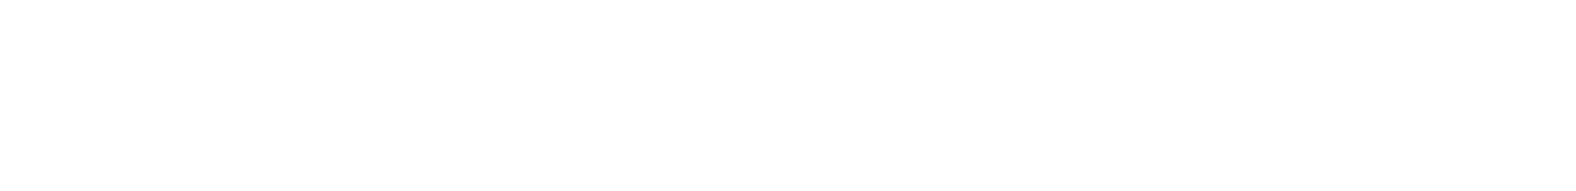 Mexico Miss Teen Turismo Mundial